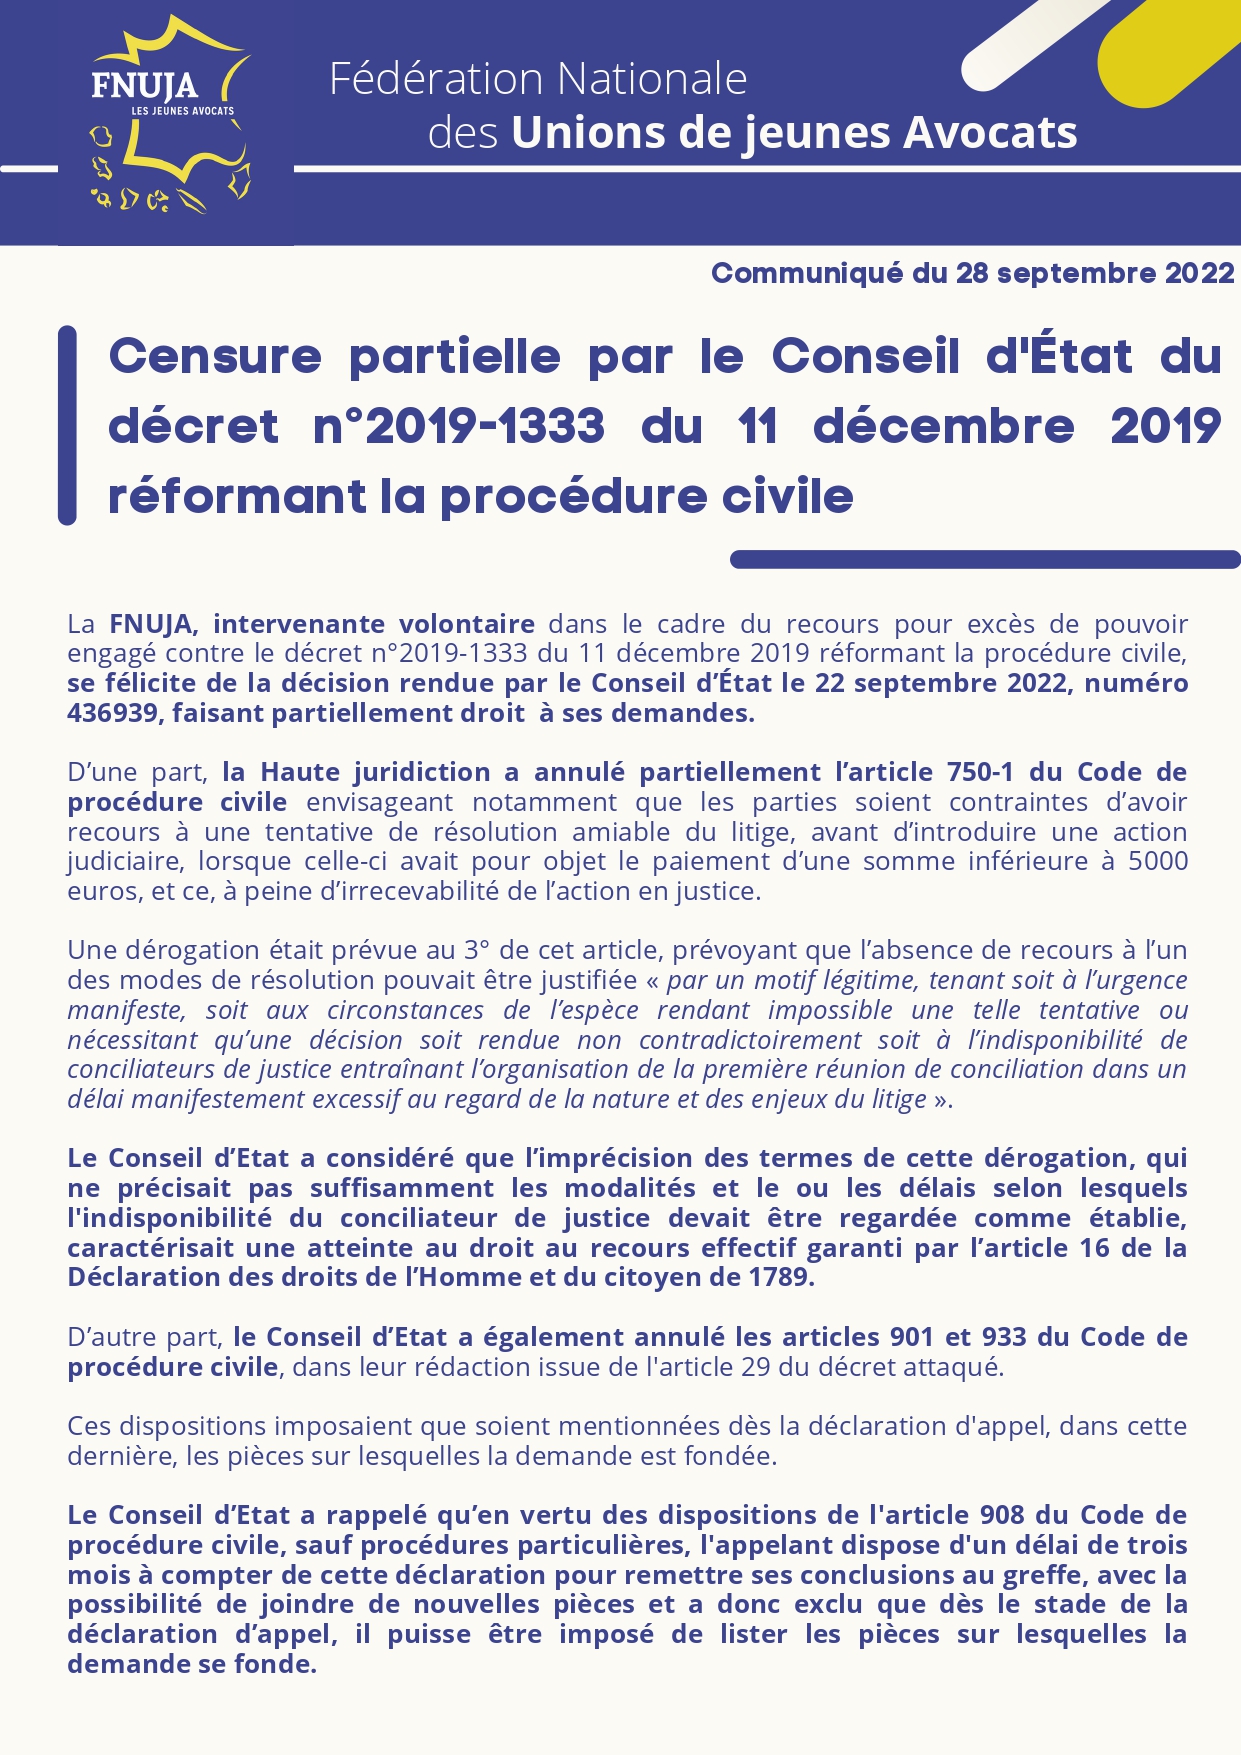 Censure partielle par le Conseil d'État du décret n°2019-1333 du 11 décembre 2019 réformant la procédure civile